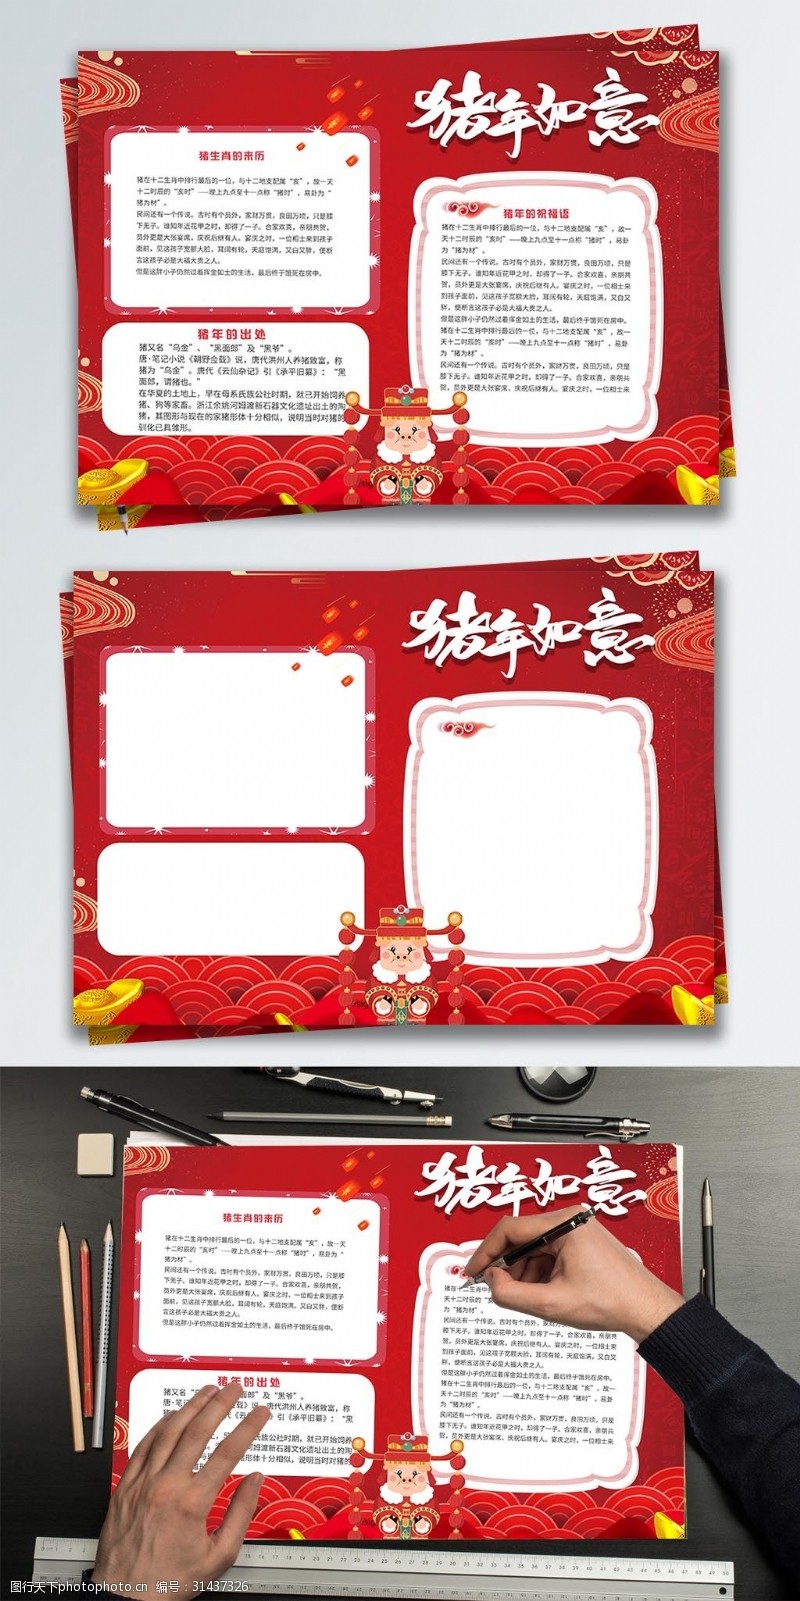 手抄报模板红色简约新年节日手抄报设计PSD模板